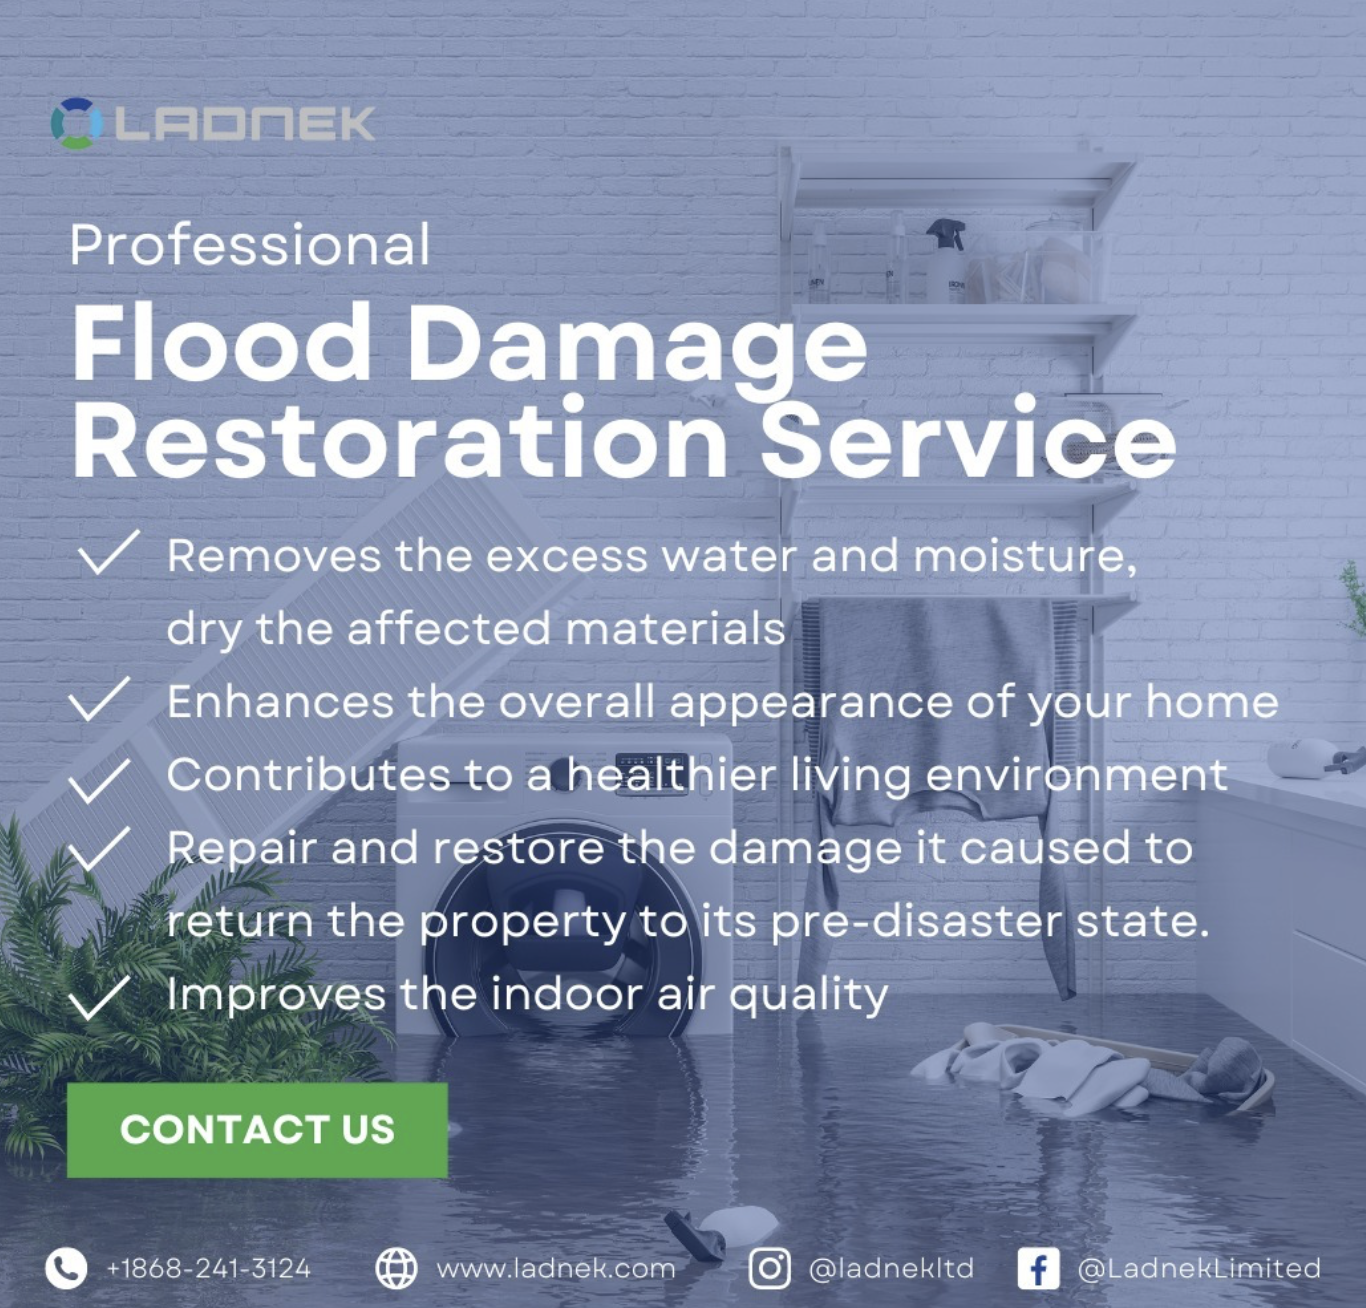 Flood damage restoration services-ladnek